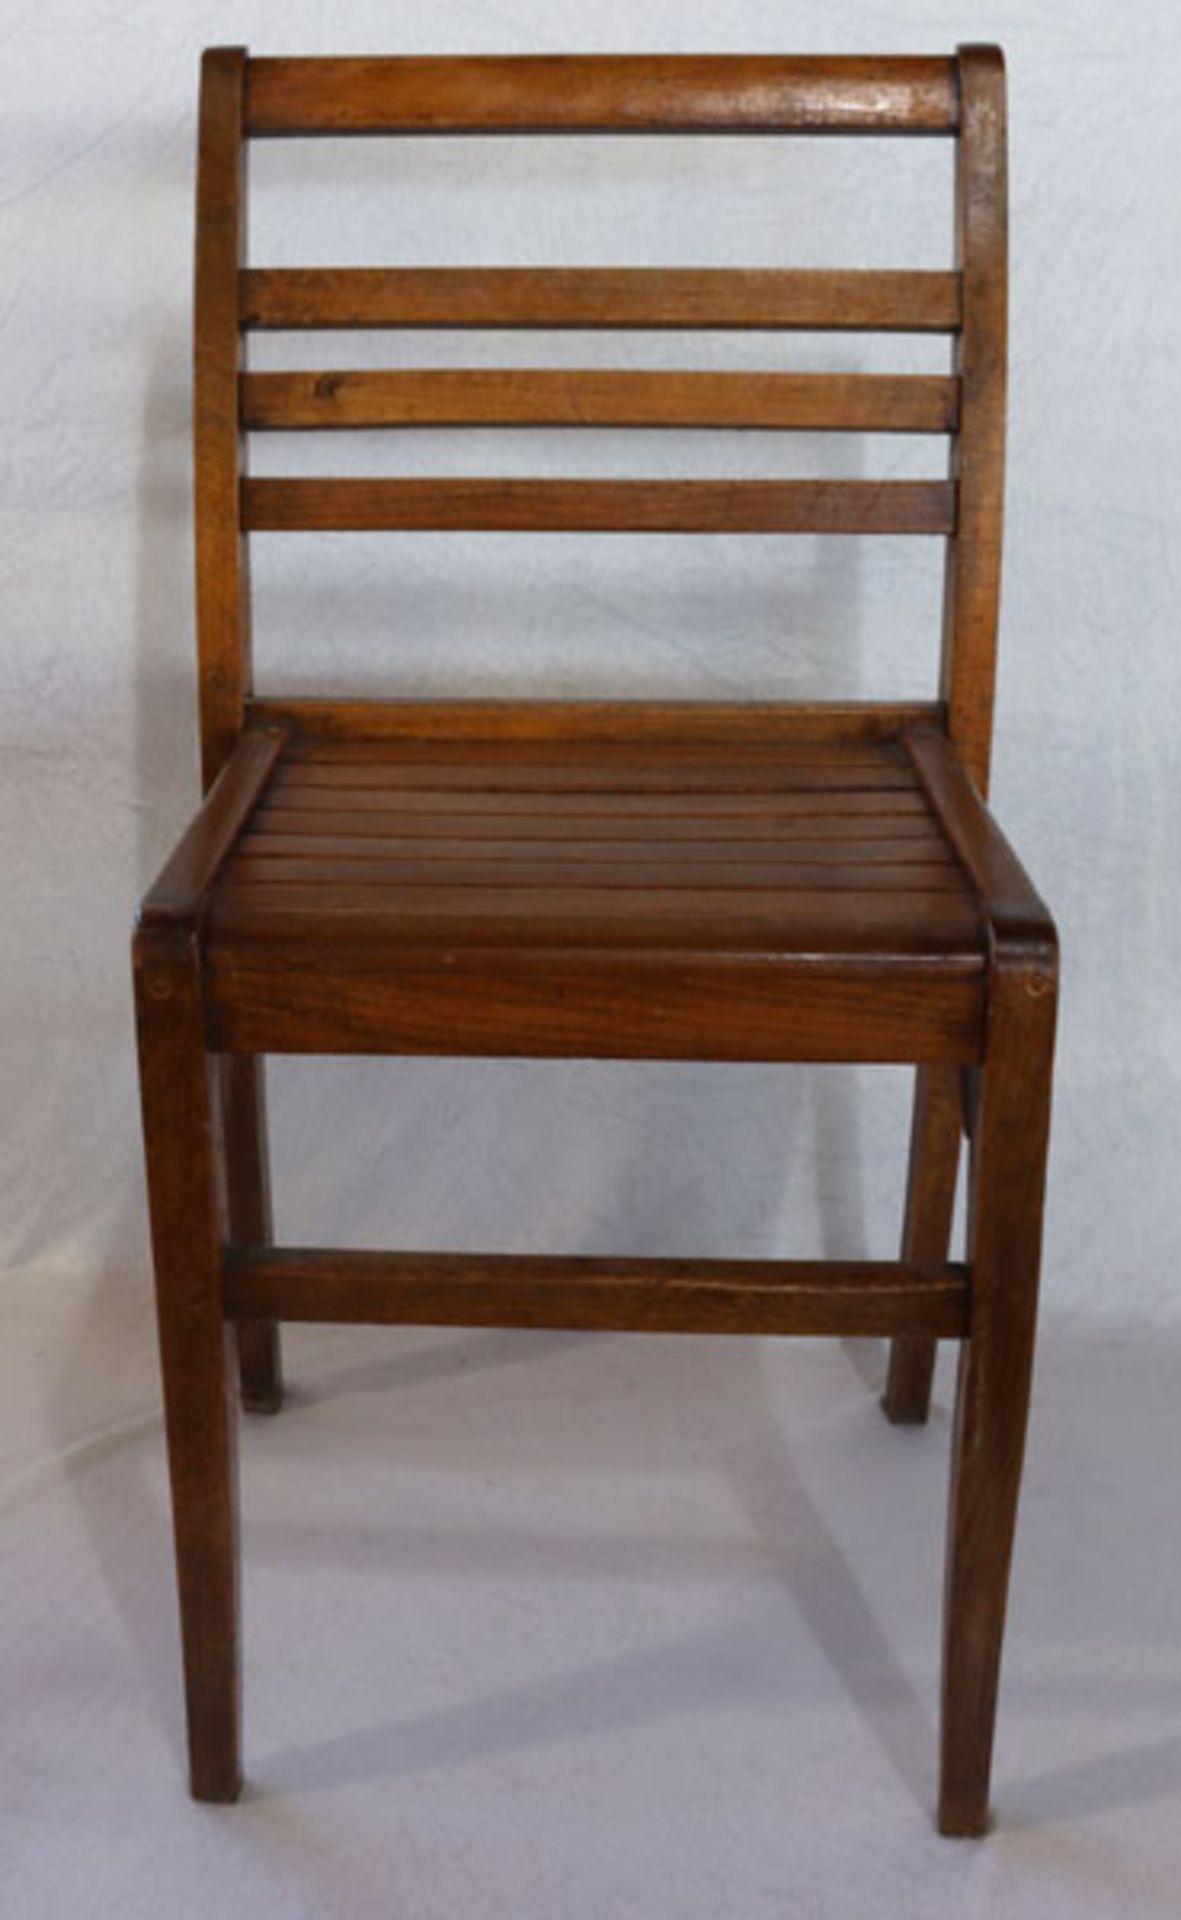 8 stapelbare Holzstühle, H H 80 cm, 43 cm, T 37 cm, Gebrauchsspuren